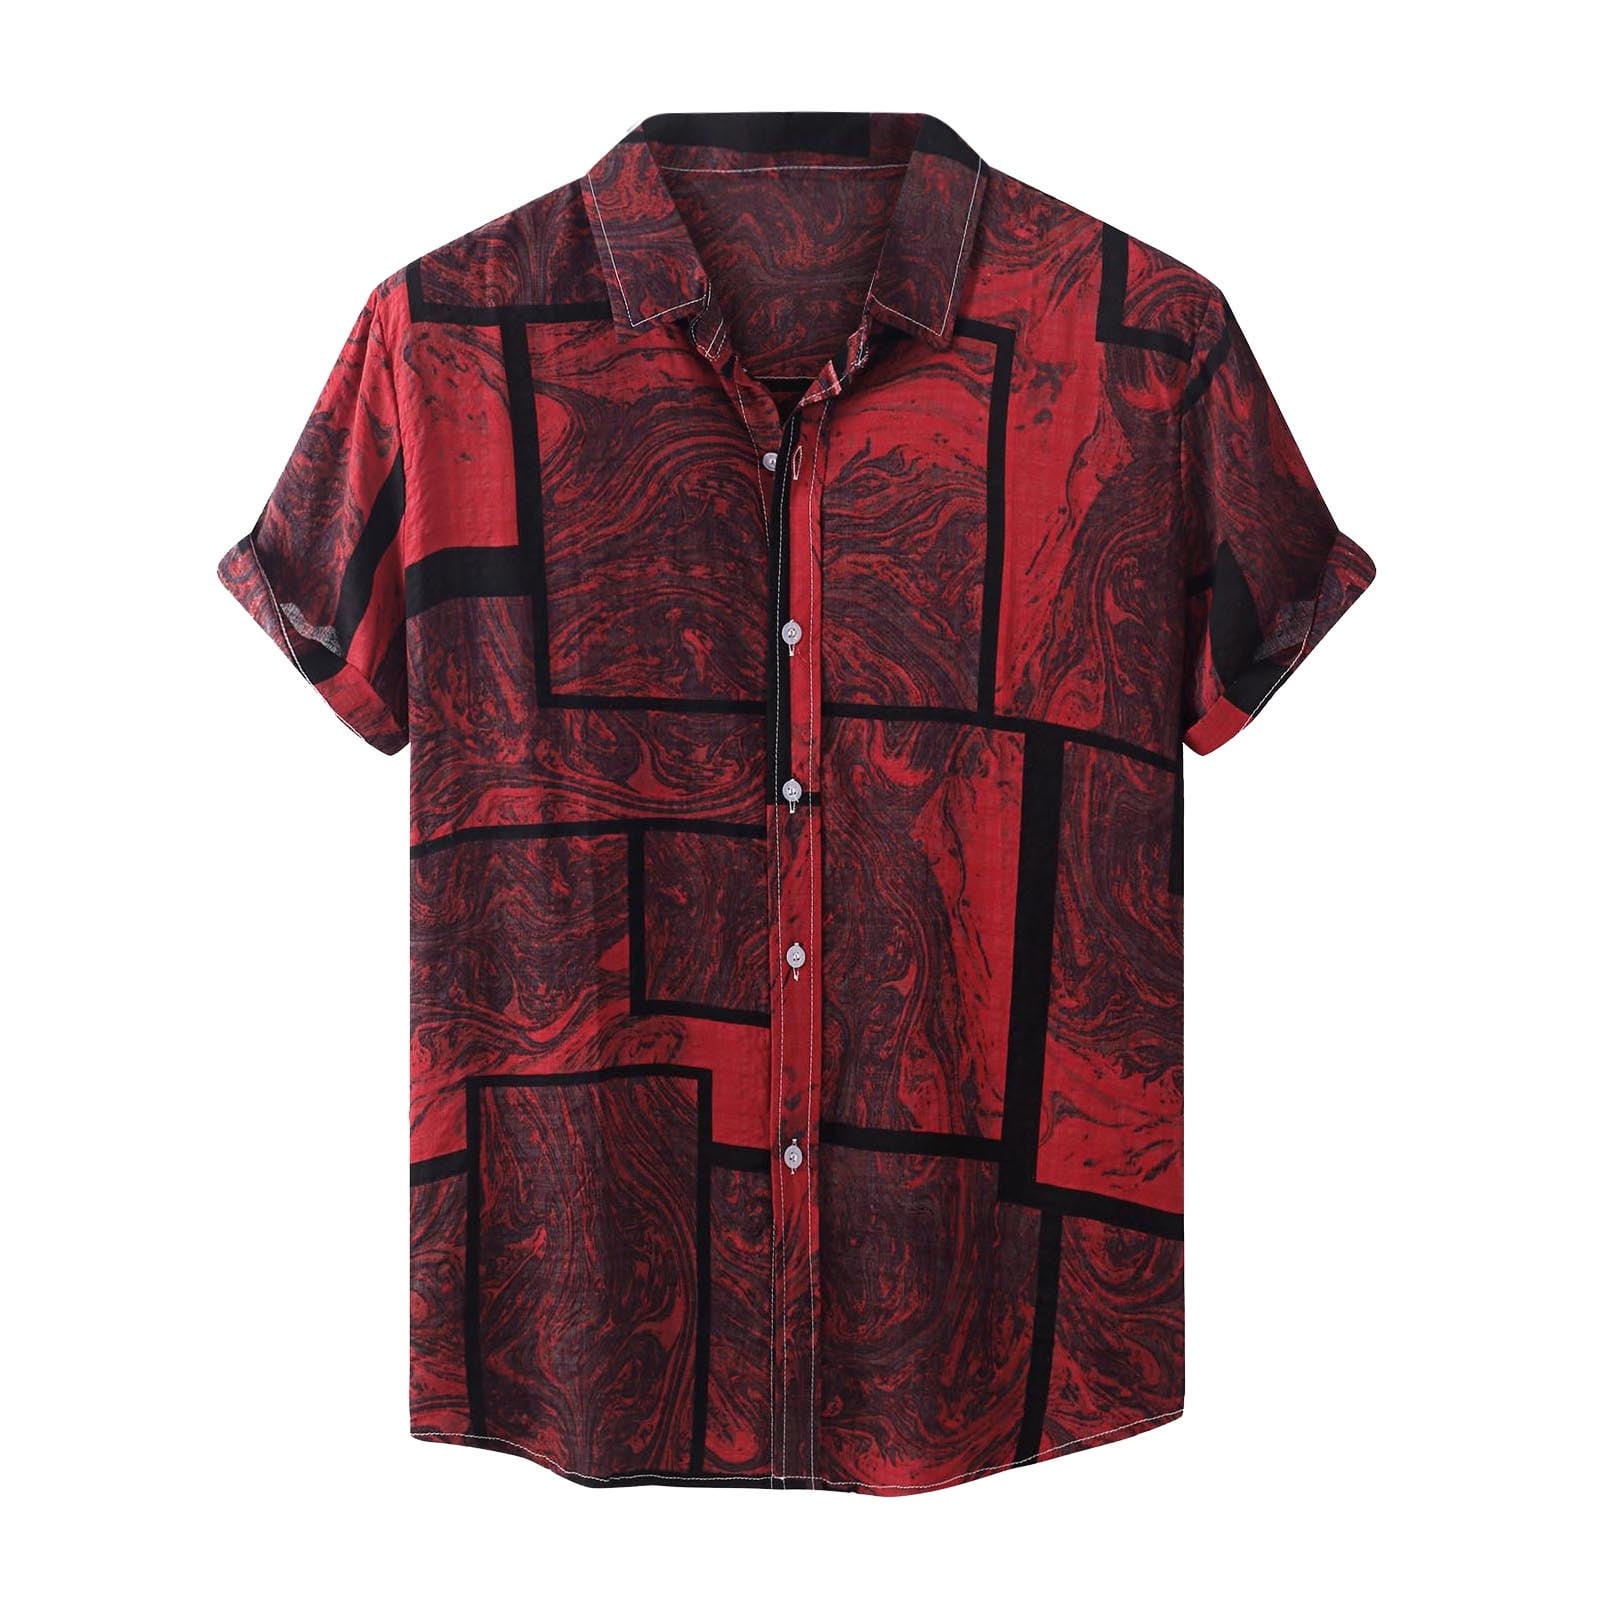 JSGEK Men's Summer T-Shirts Pullover Basic Shirt Short Sleeve